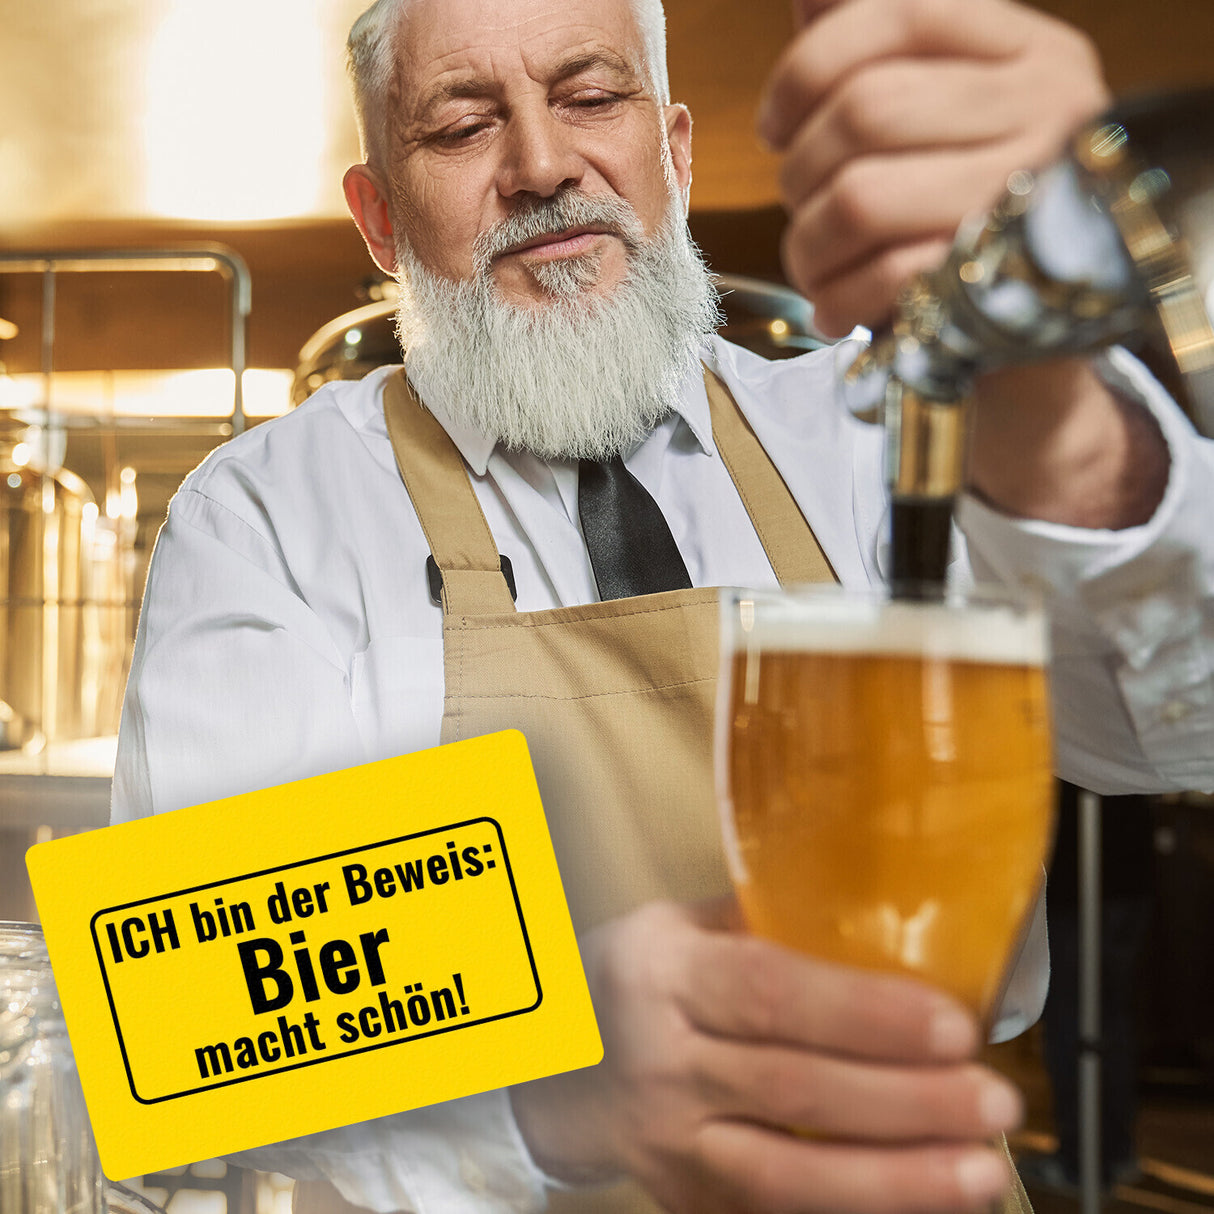 Fussmatte mit Alkohol-Spruch Ich bin der Beweis: Bier macht schön!